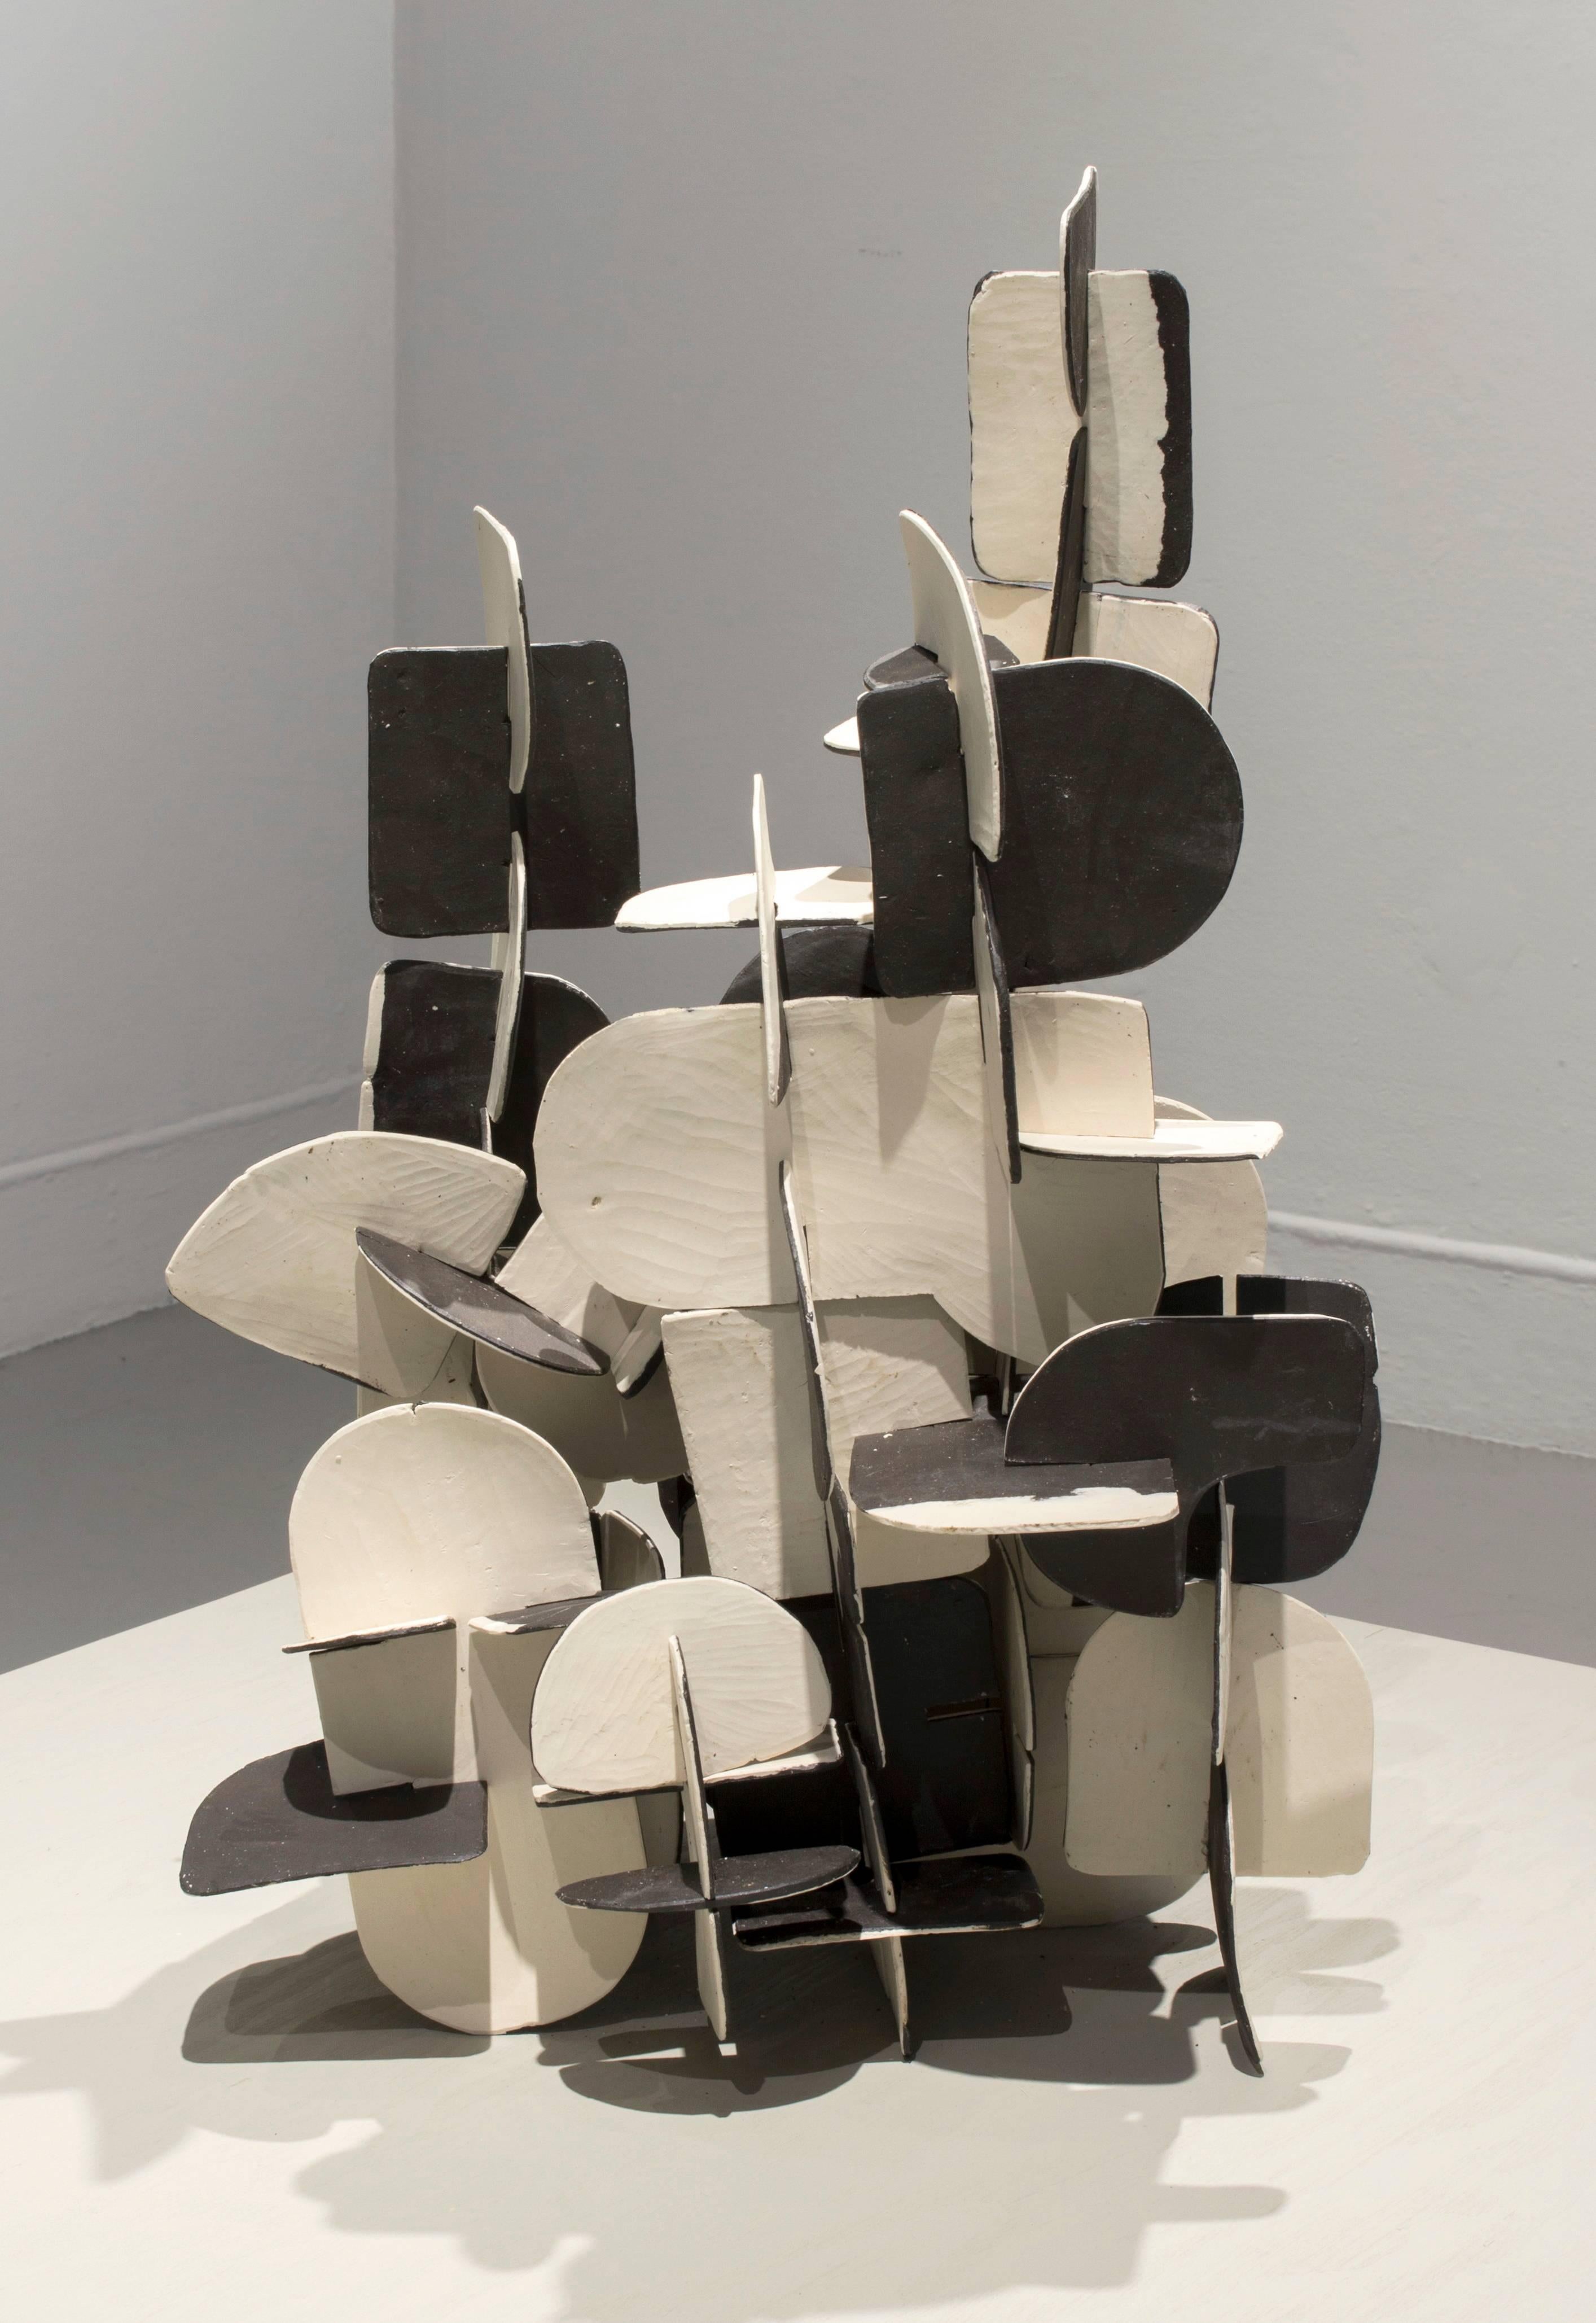 Anna Hepler Abstract Sculpture – Jigsaw-Schau